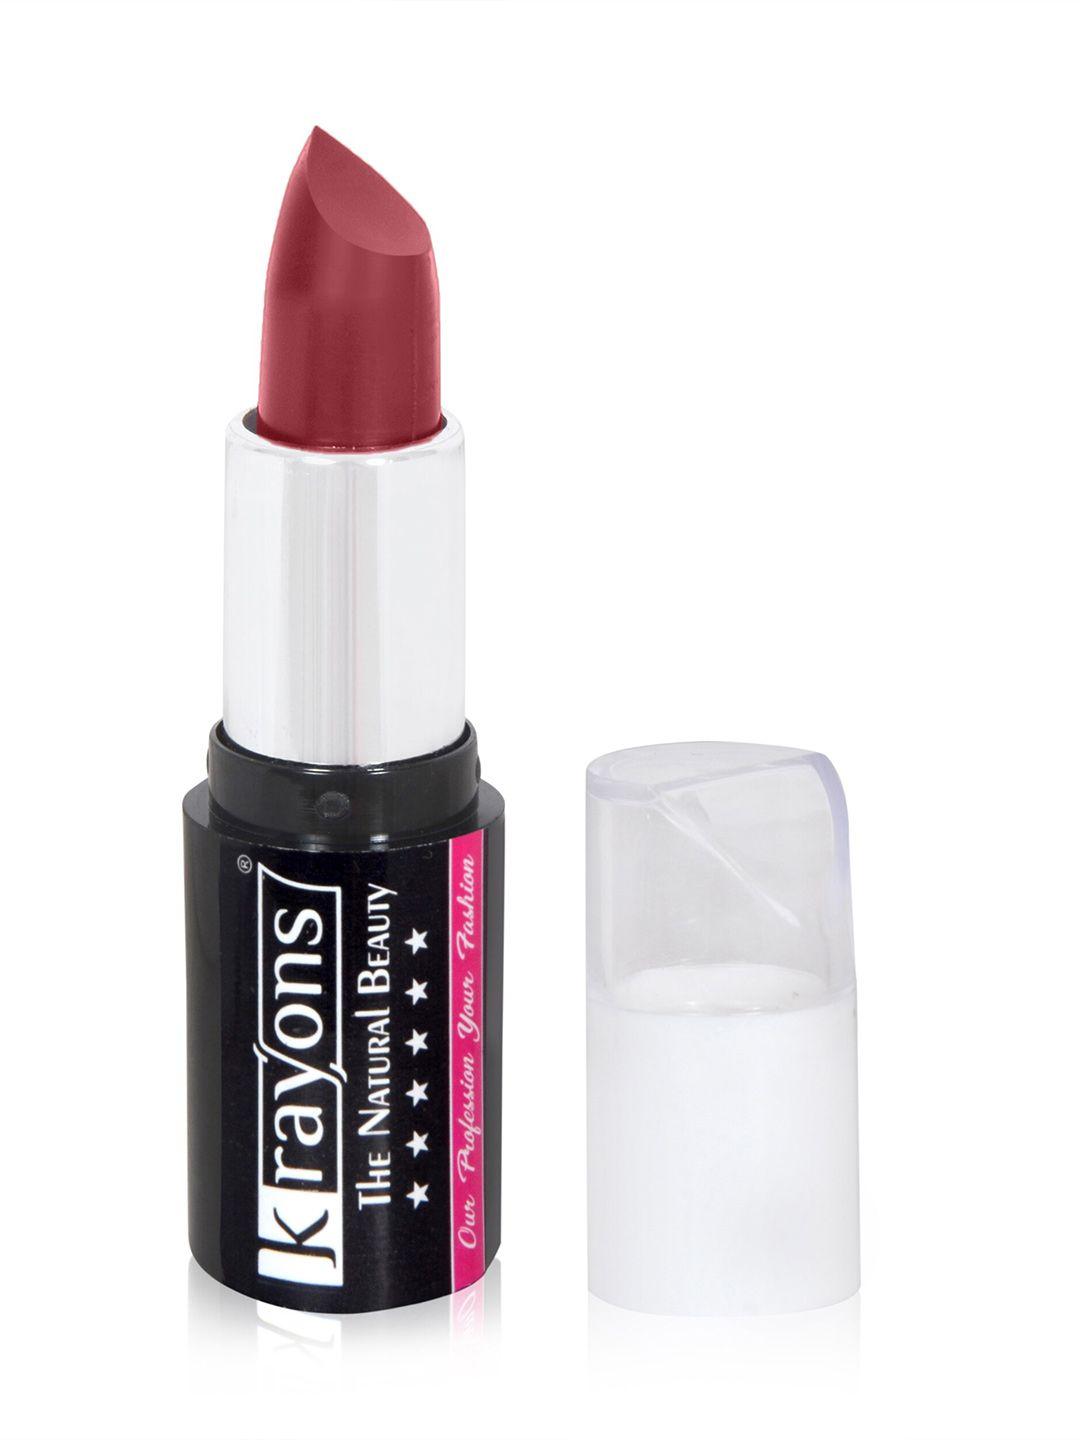 krayons set of 2 the natural beauty lipsticks 4g each-plum pink 11 & haze nude 12